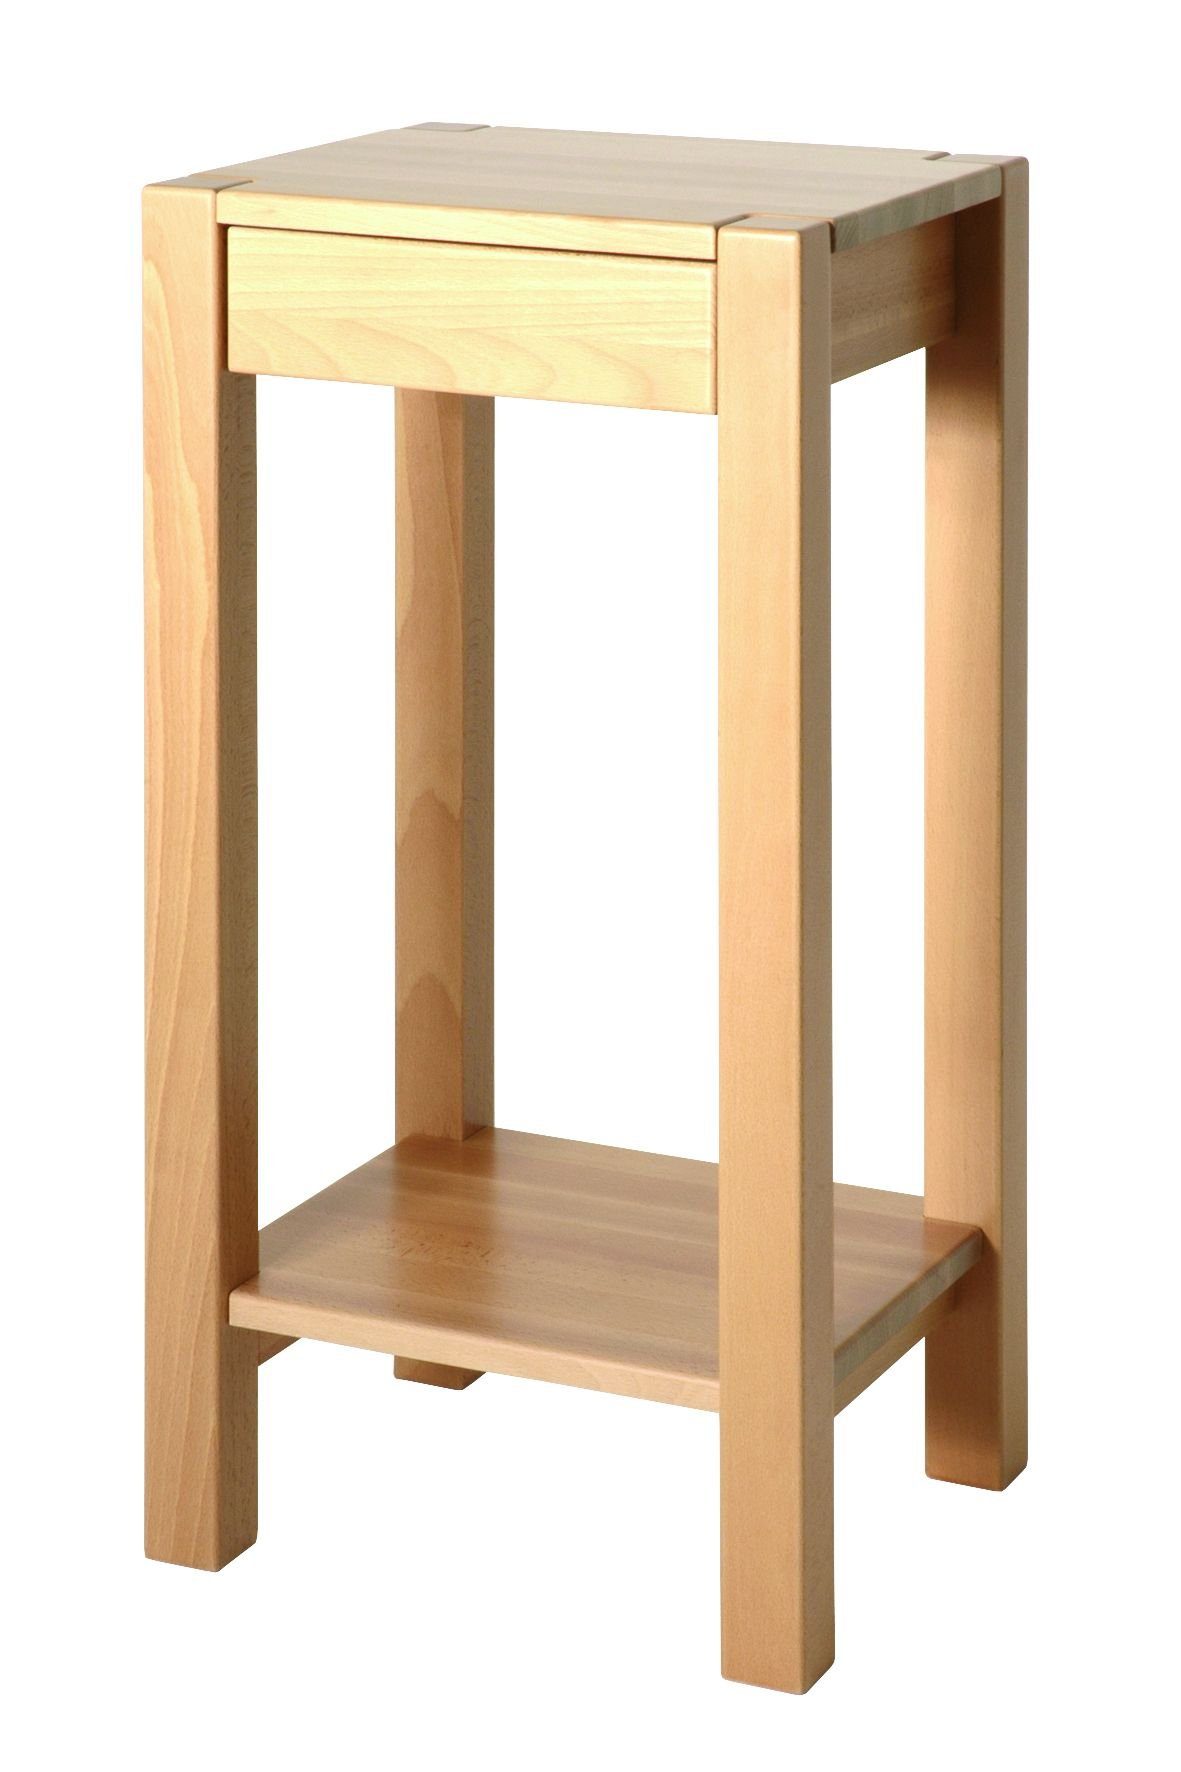 HAKU Beistelltisch Beistelltisch, HAKU Möbel Beistelltisch (BHT 37x73x33 cm) BHT 37x73x33 cm beige